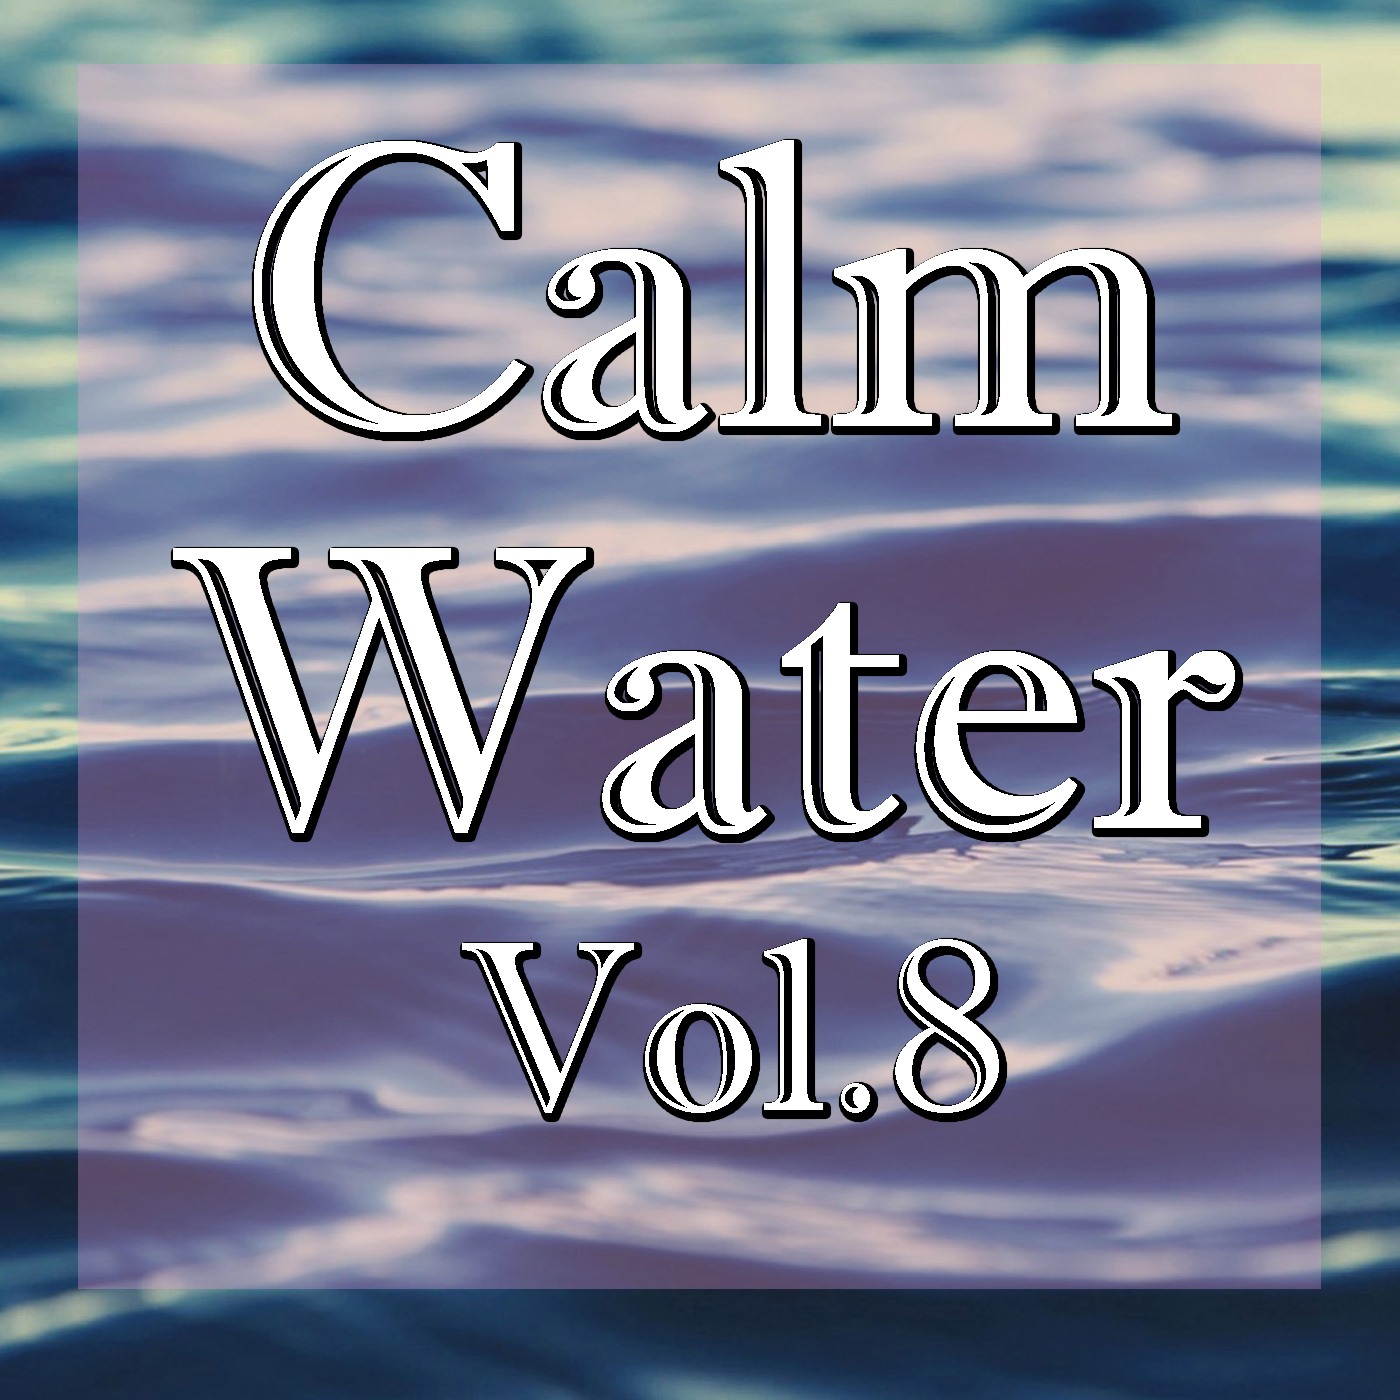 Calm Water, Vol.8